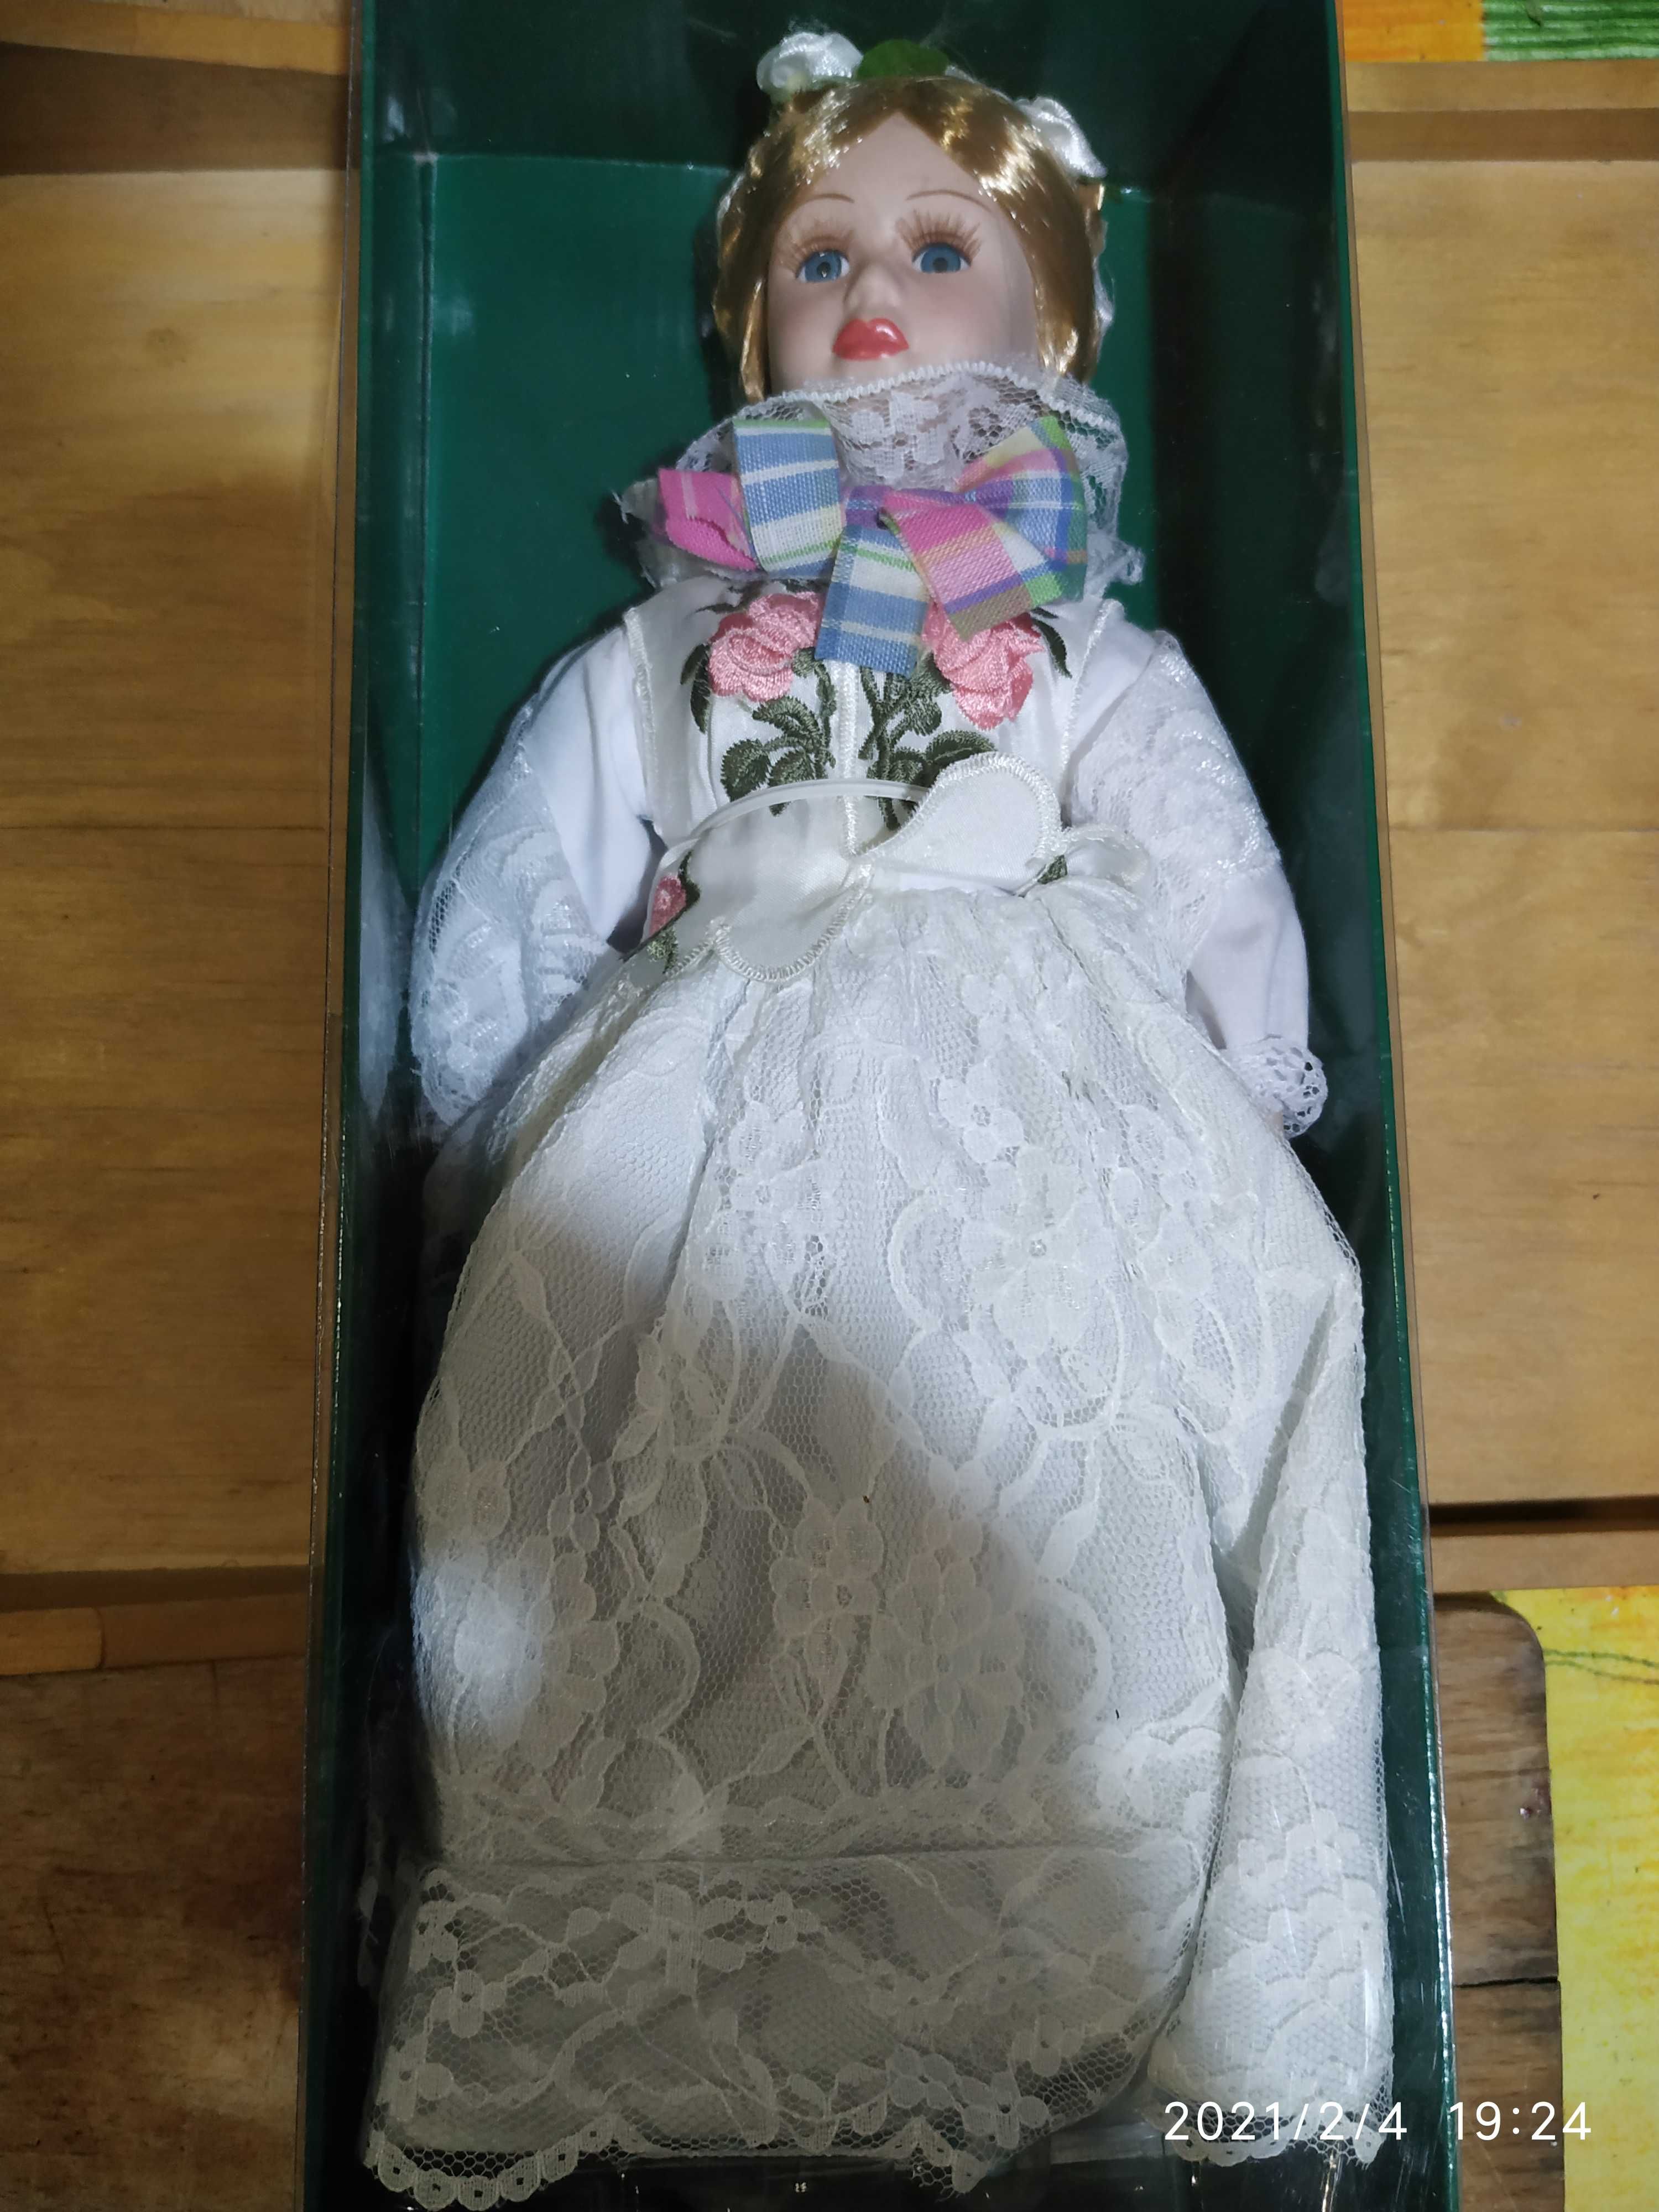 Duża porcelanowa lalka w polskim stroju ludowym